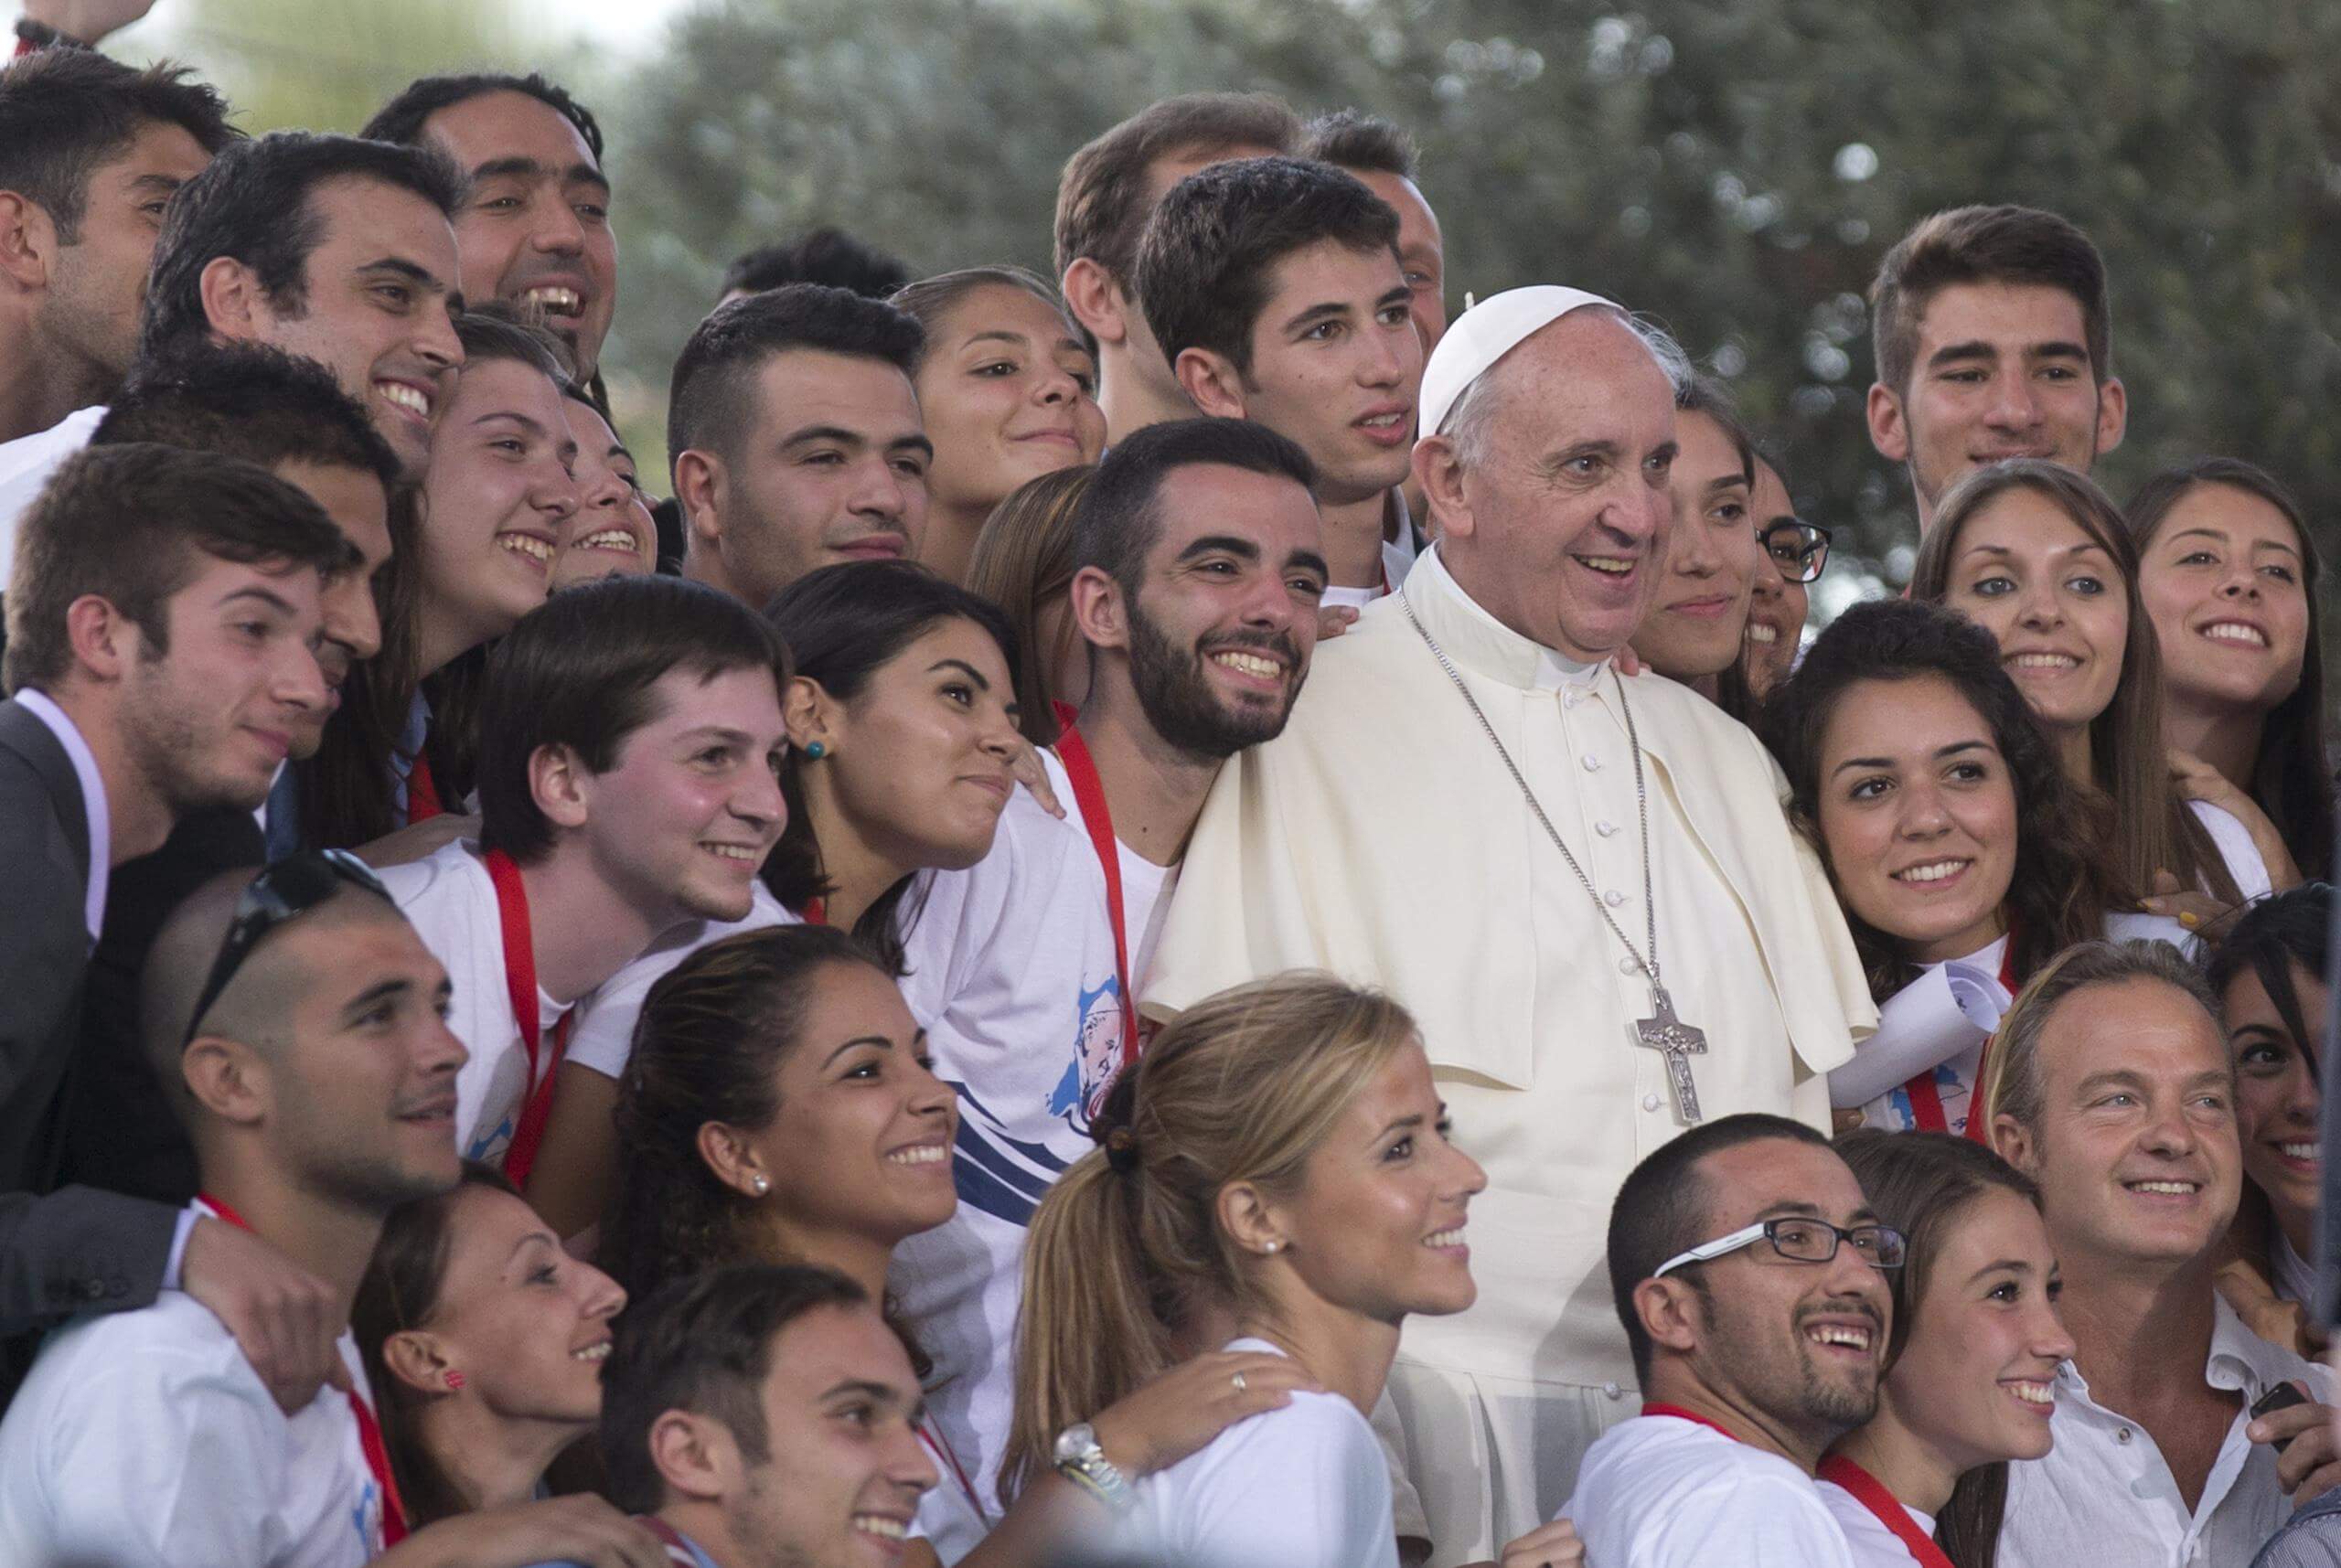 ¿A qué tienes miedo?, la pregunta del Papa Francisco a los jóvenes llenos de temores